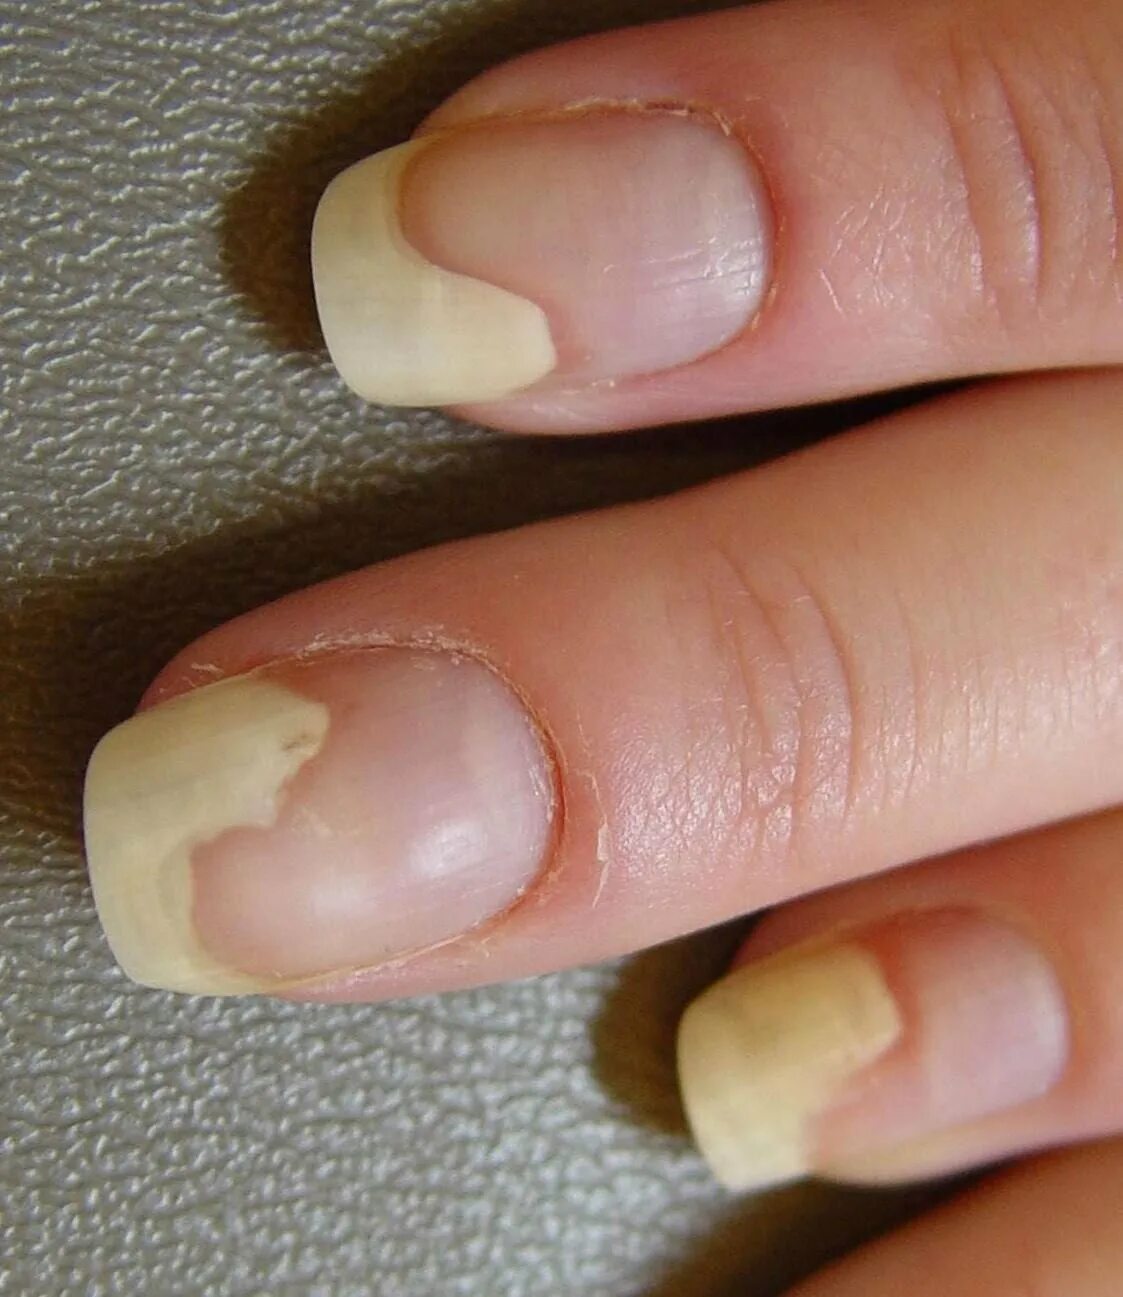 Ониходистрофия - онихолизис.. Онихолизис ногтей онихолизис. Почему ногти снимаются пленкой